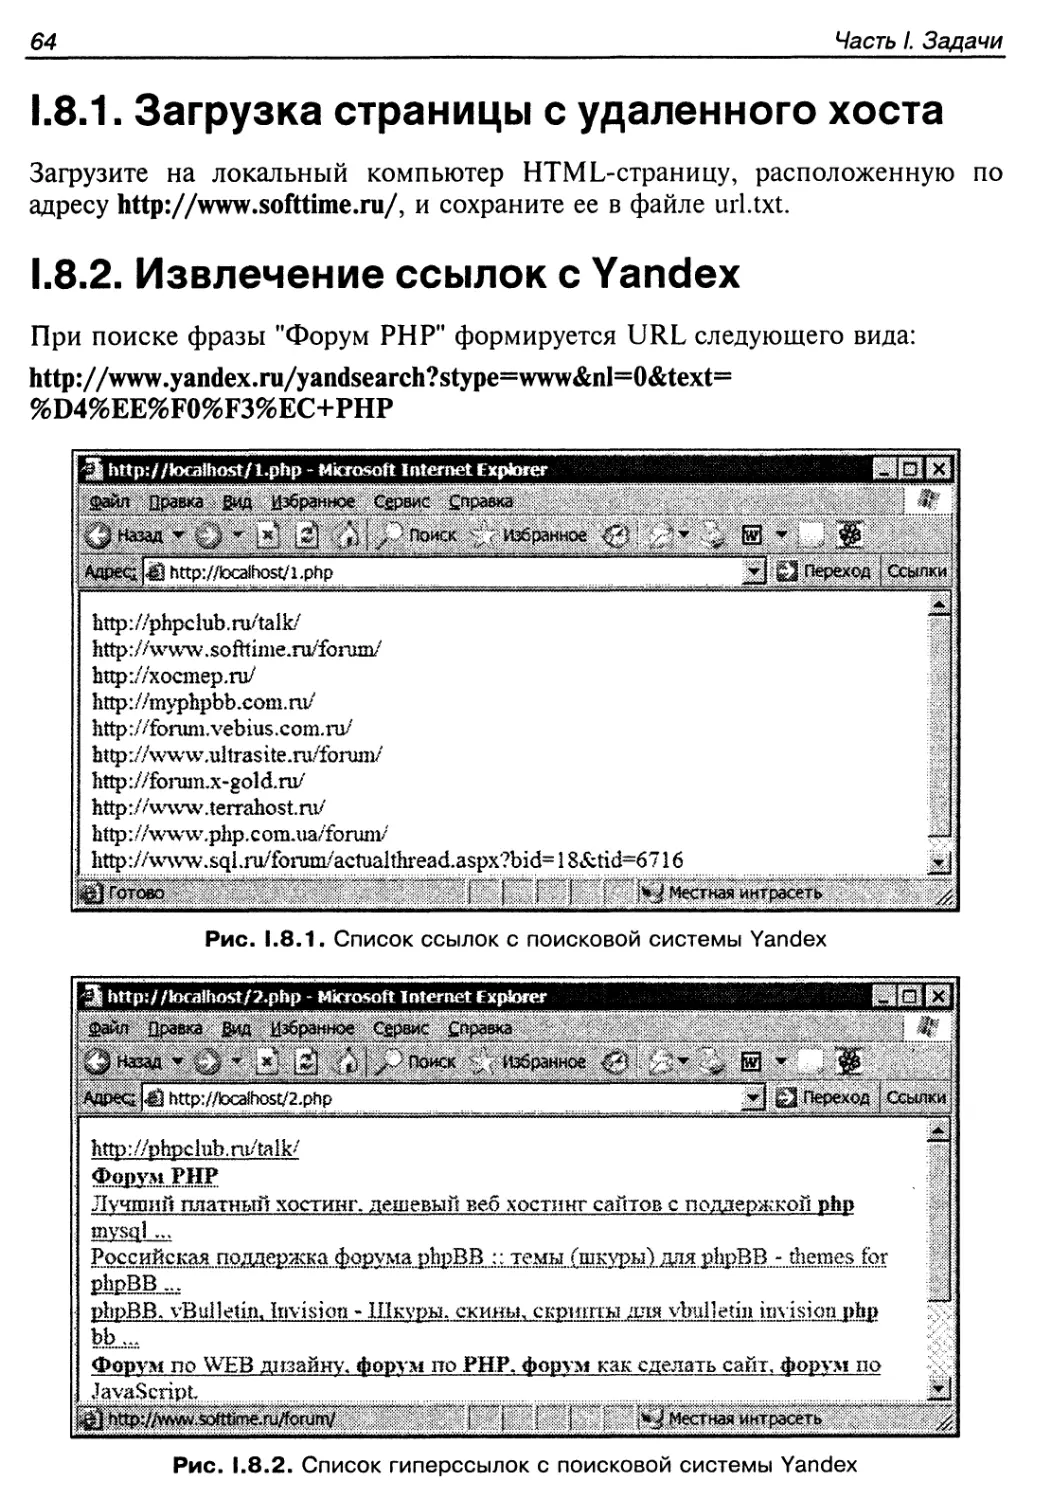 1.8.2. Извлечение ссылок с Yandex